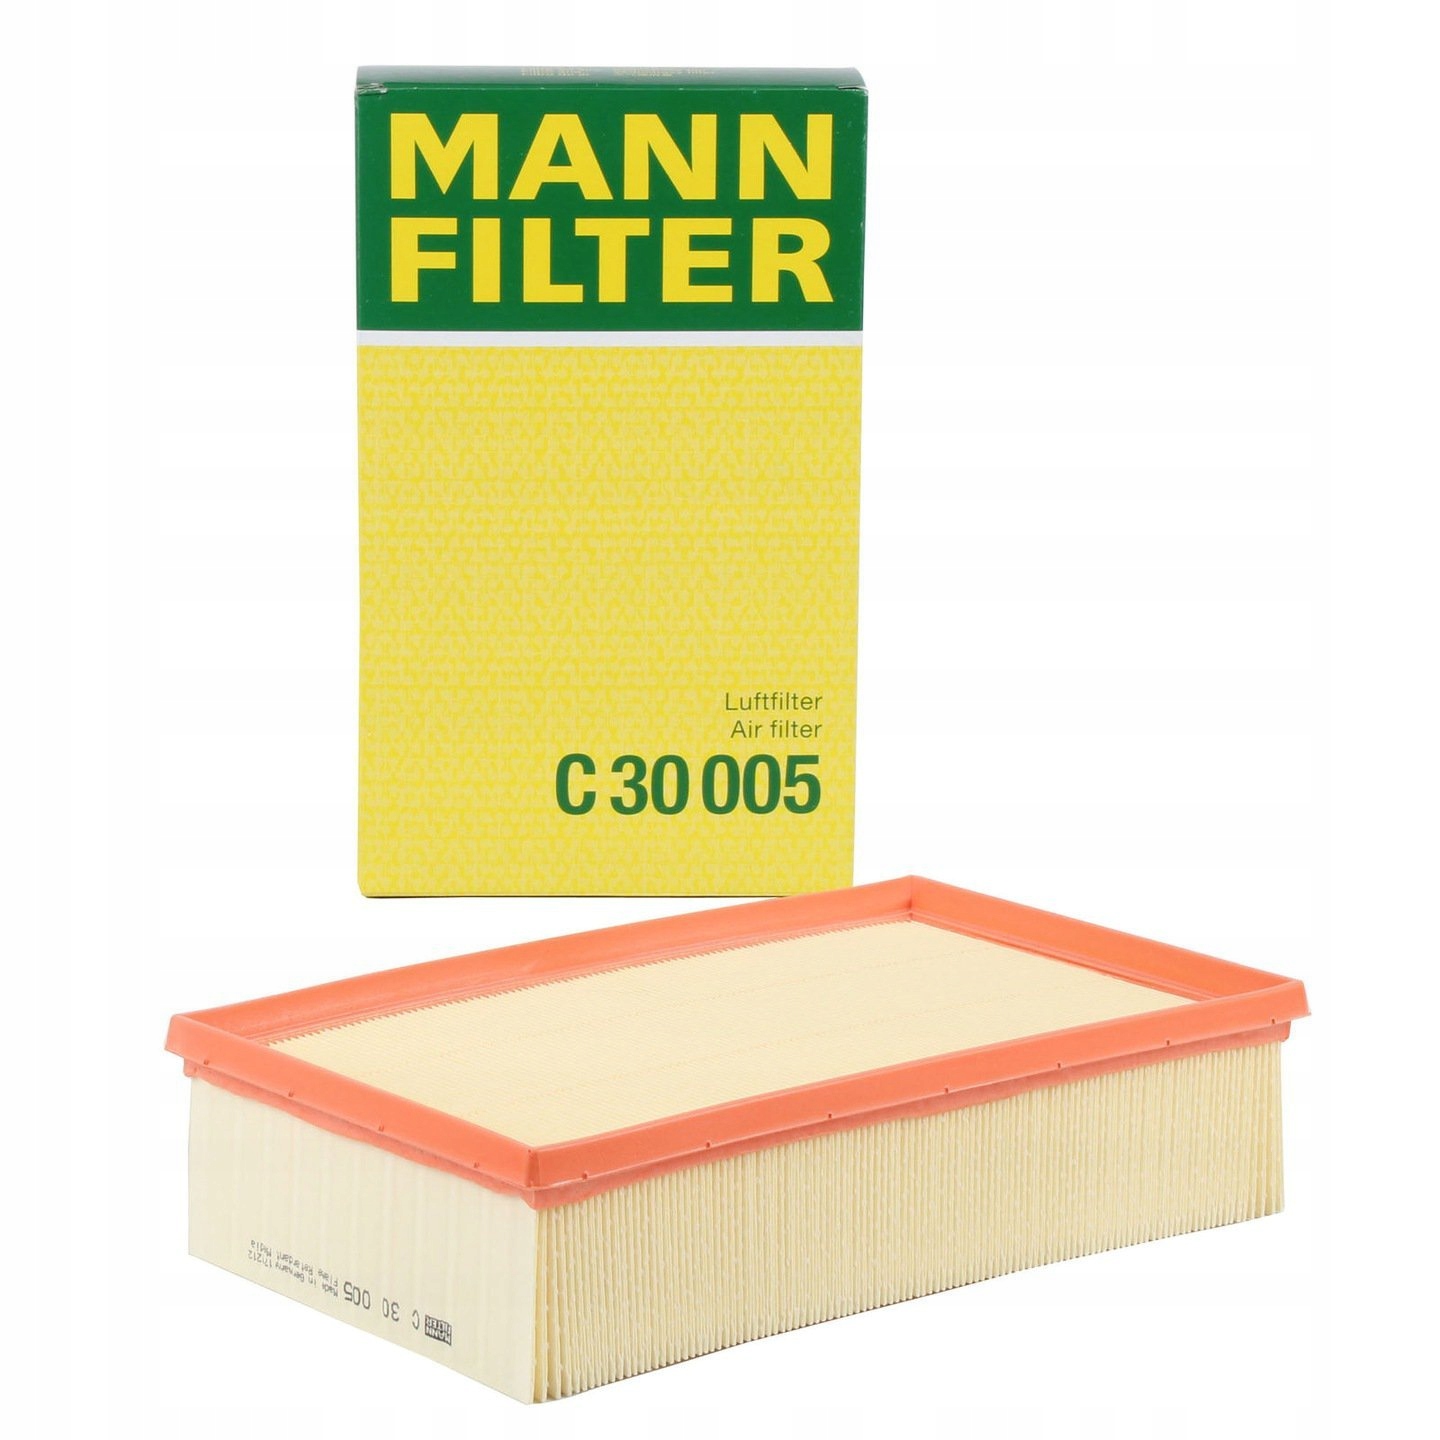 Mann filter воздушный фильтр. Воздушный фильтр Mann-Filter c 30 005. C30005 Mann-Filter фильтр воздушный. C30005 Mann. Фильтр воздушный Mann c30009.